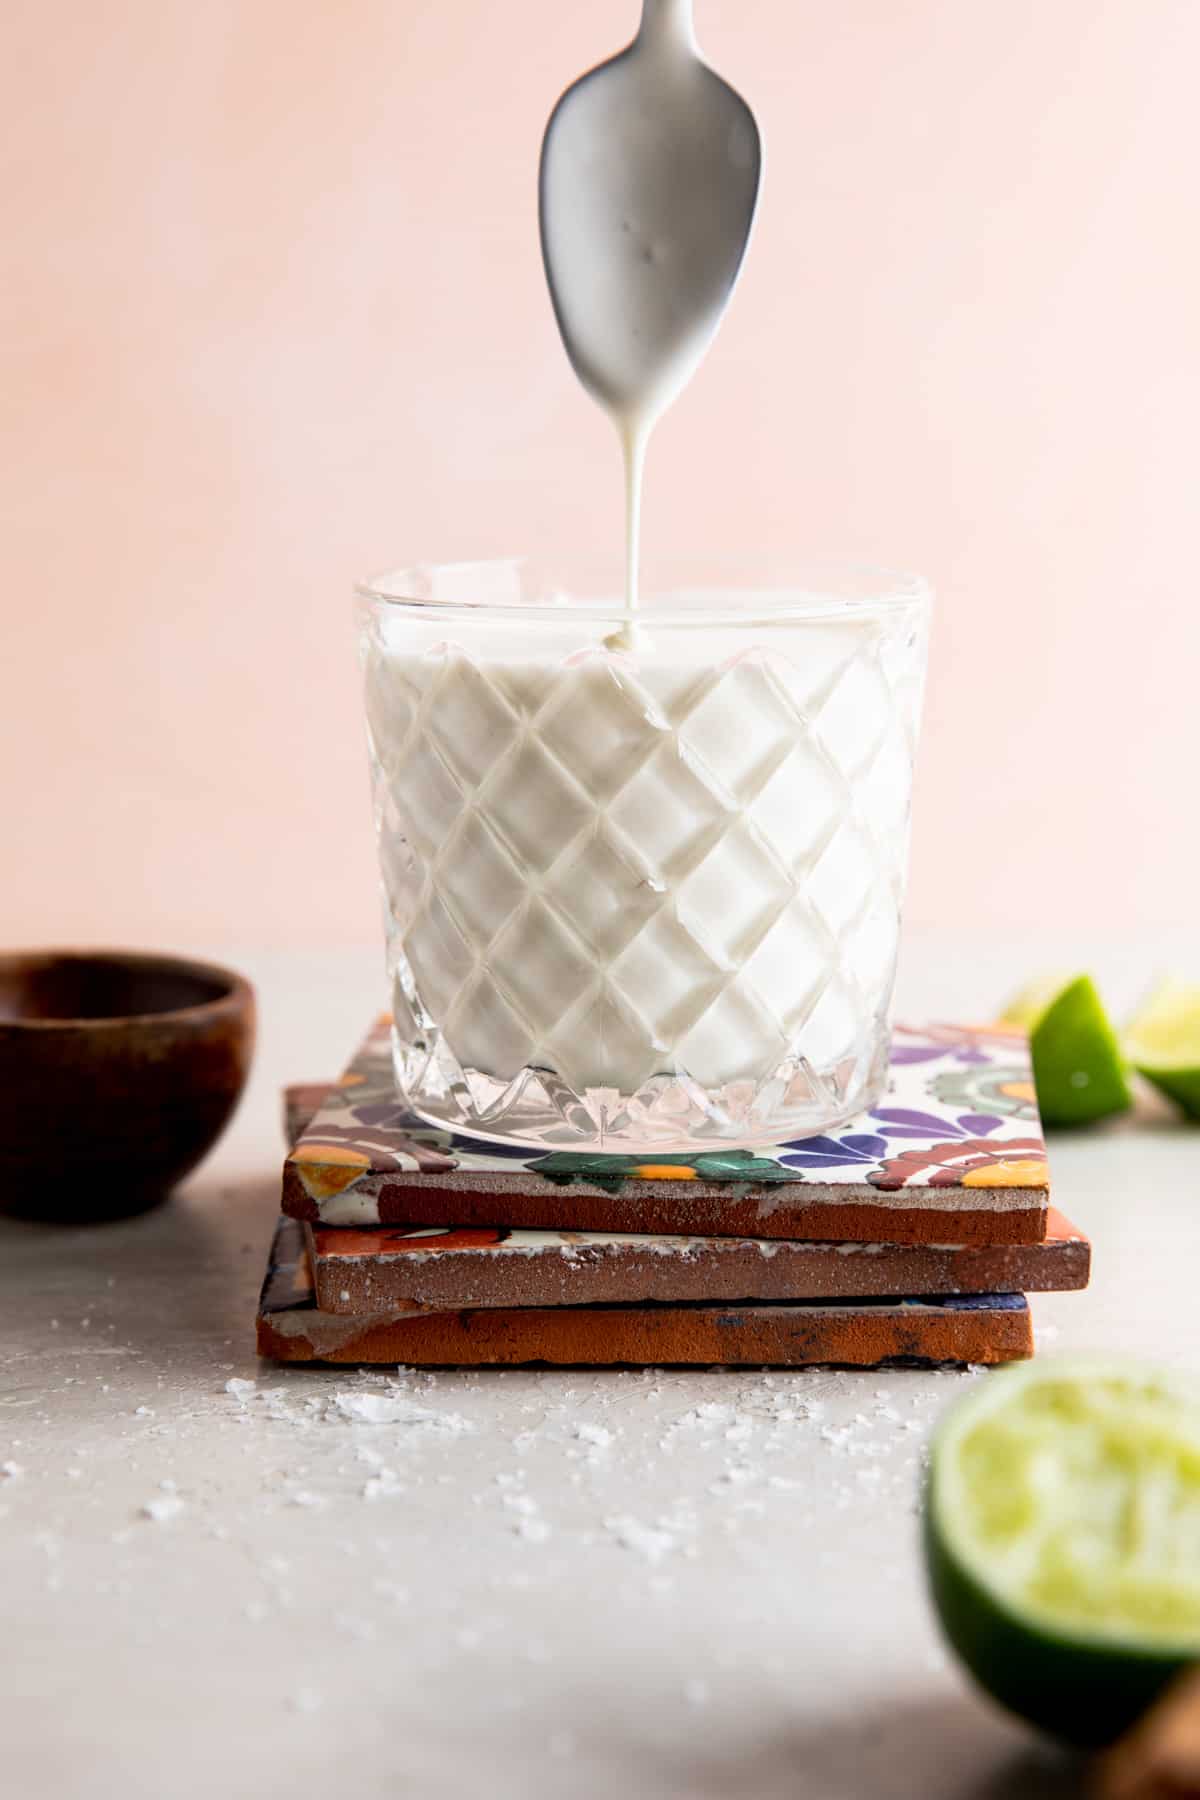 Coupe remplie de crème mexicaine maison avec une cuillère au-dessus pour arroser la crème.